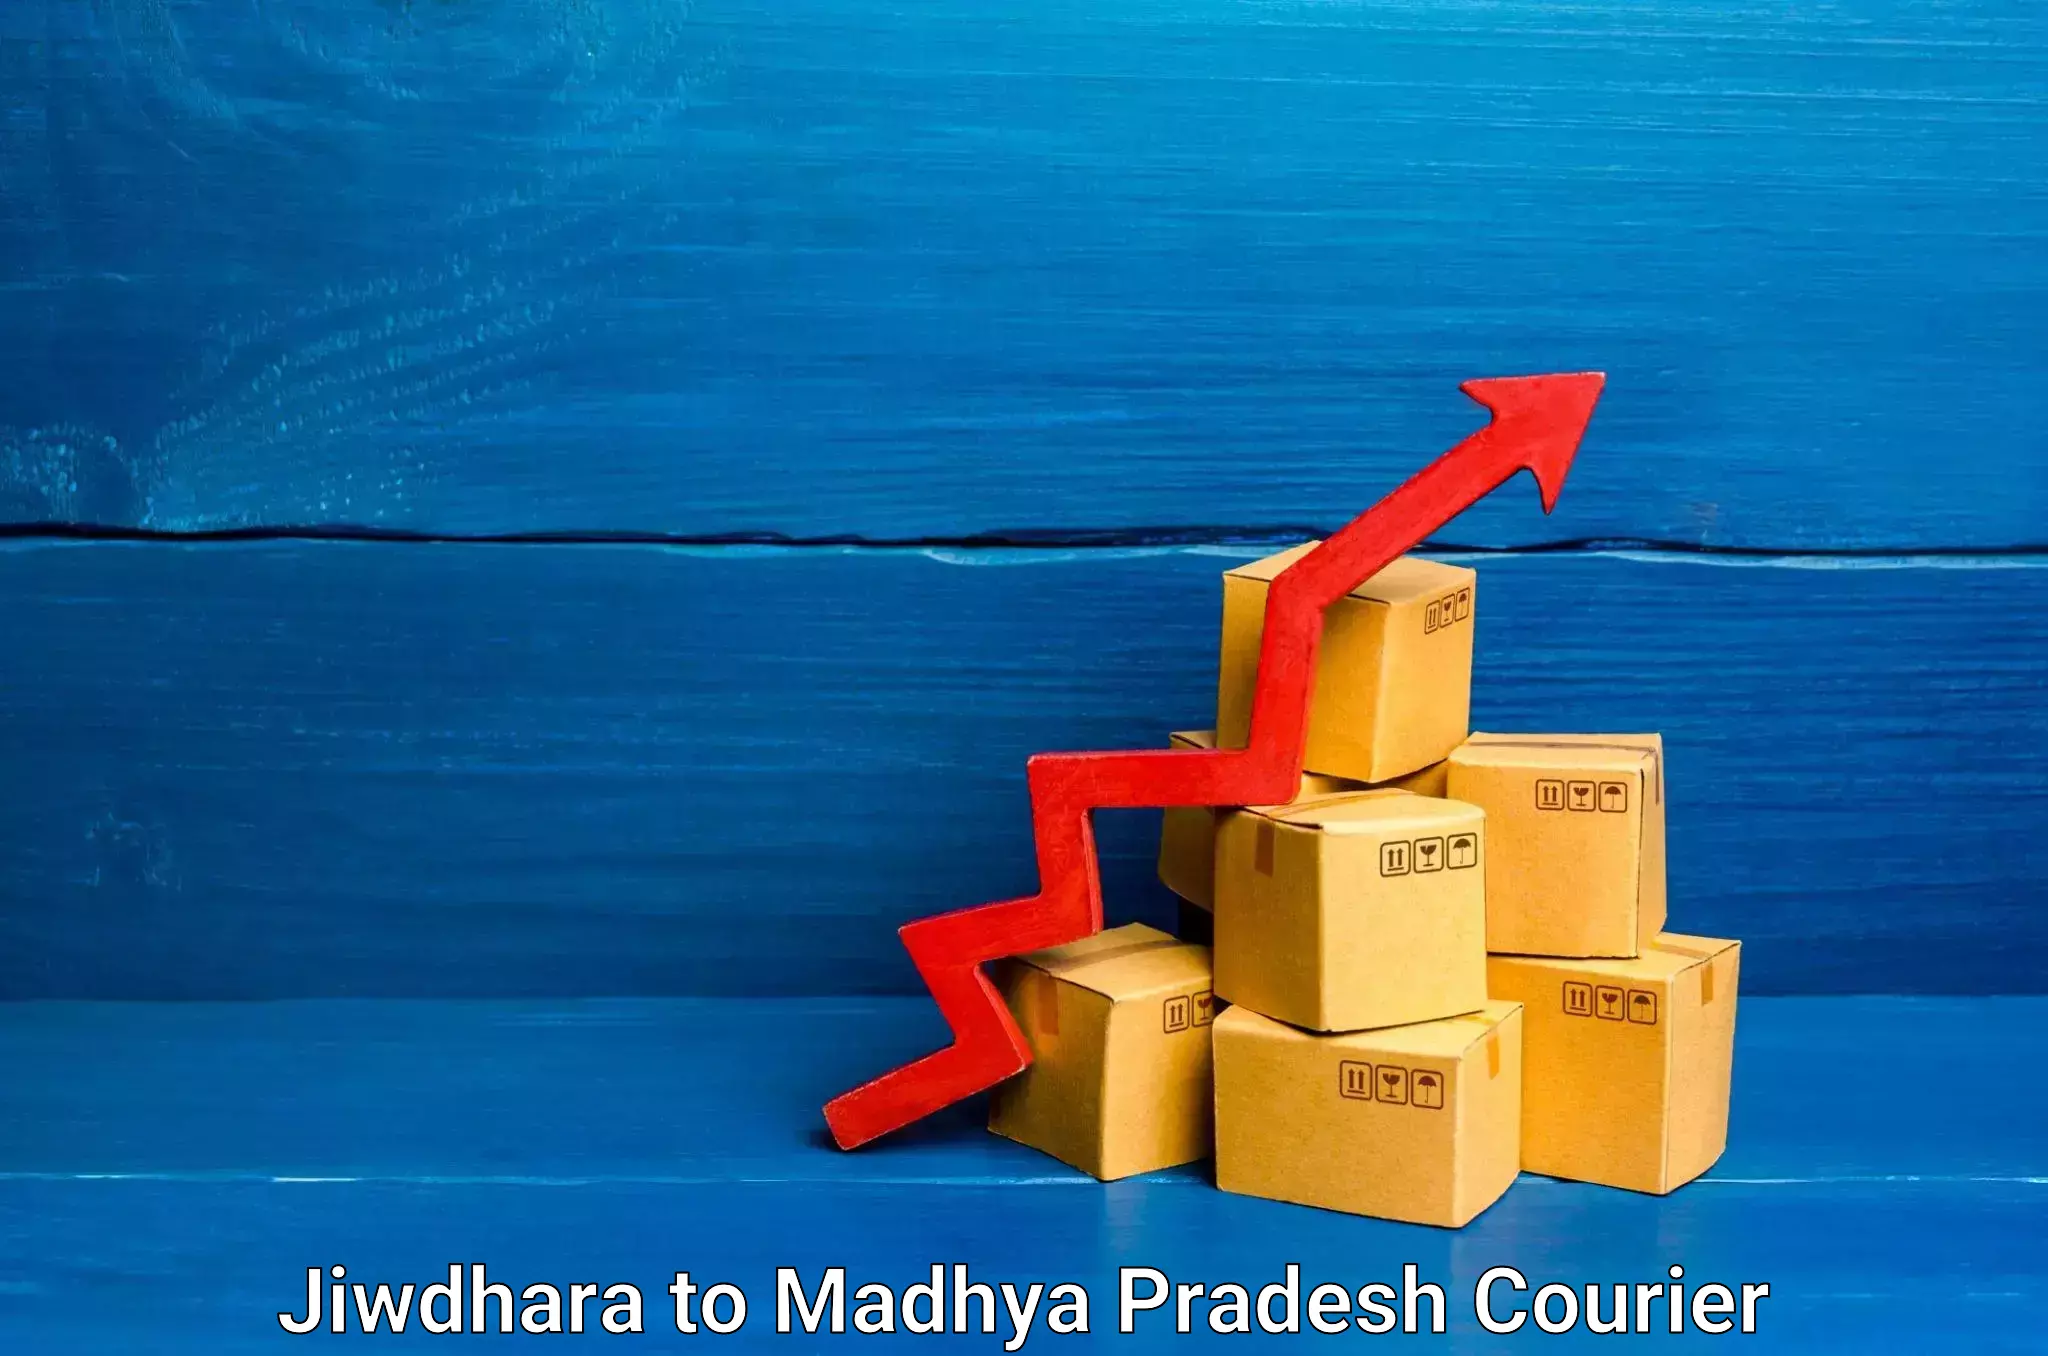 Furniture moving services Jiwdhara to Madhya Pradesh